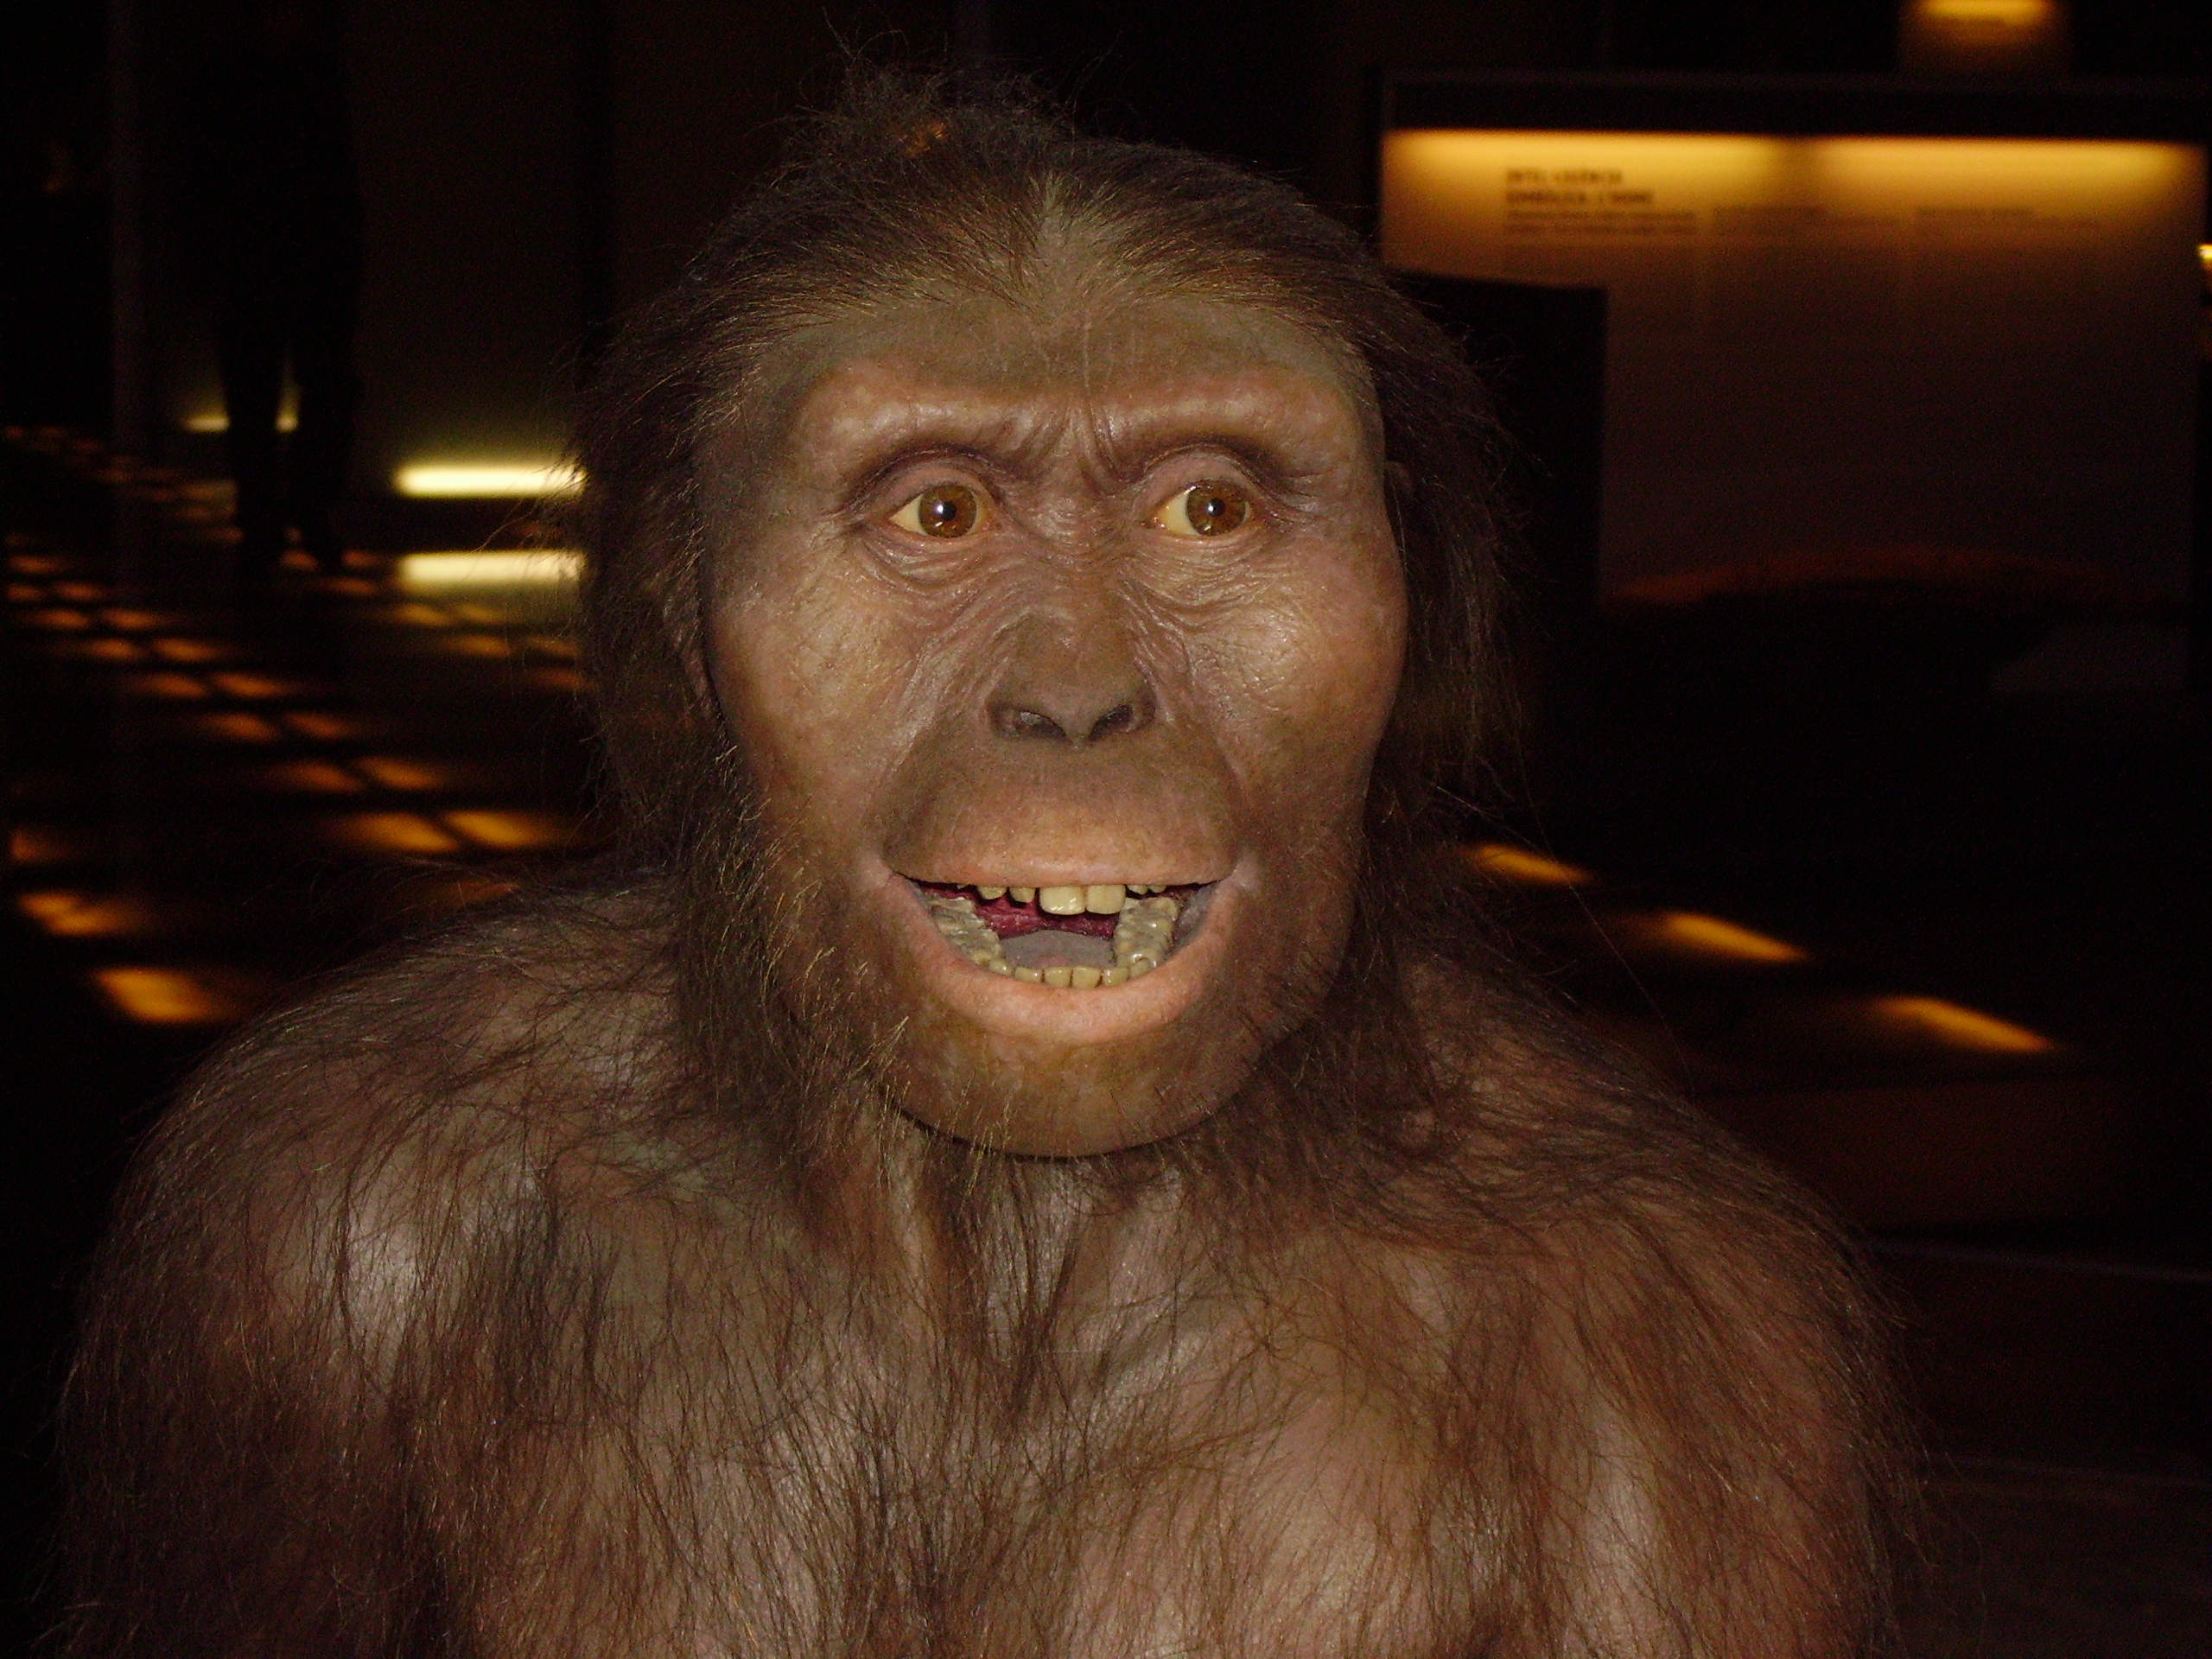 Hai 40 anos, o 24 de novembro de 1974, apareceu Lucy, o esqueleto fosilizado case completo dun homínido da especie Australopithecus Afarensis, de 3,2 millóns de anos de antigüidade, descuberto polo estadounidense Donald Johanson a 159 quilómetros ao sur de Adís Abeba, en Etiopía. A achega que fixo Lucy ao coñecemento da evolución foi espectacular. Ata ese ano non existían probas claras de bipedismo en ningunha especie con máis de 2 millóns de anos de antigüidade. Astralophitecus afarensis viviu en África hai 3,2 millóns de anos, e é un dos homínidos máis antigos que se coñecen. E sabemos que camiñaba ergueita, polo que Lucy pertence ó punto en que os homínidos comezaron a ter unha aparencia máis humana que simia. A famosa Lucy consérvase nunha caixa forte en Adis Abeba e hai reproducións do seu esqueleto nos máis grandes museos de historia natural. É toda unha celebridade. O seu nome tamén ten historia. Johanson e o seu equipo barallaban algúns nomes femininos cando comezou a soar na radio do campamento 'Lucy in the Sky with Diamonds', de The Beatles. Lucy foi o nome escollido case por unanimidade.